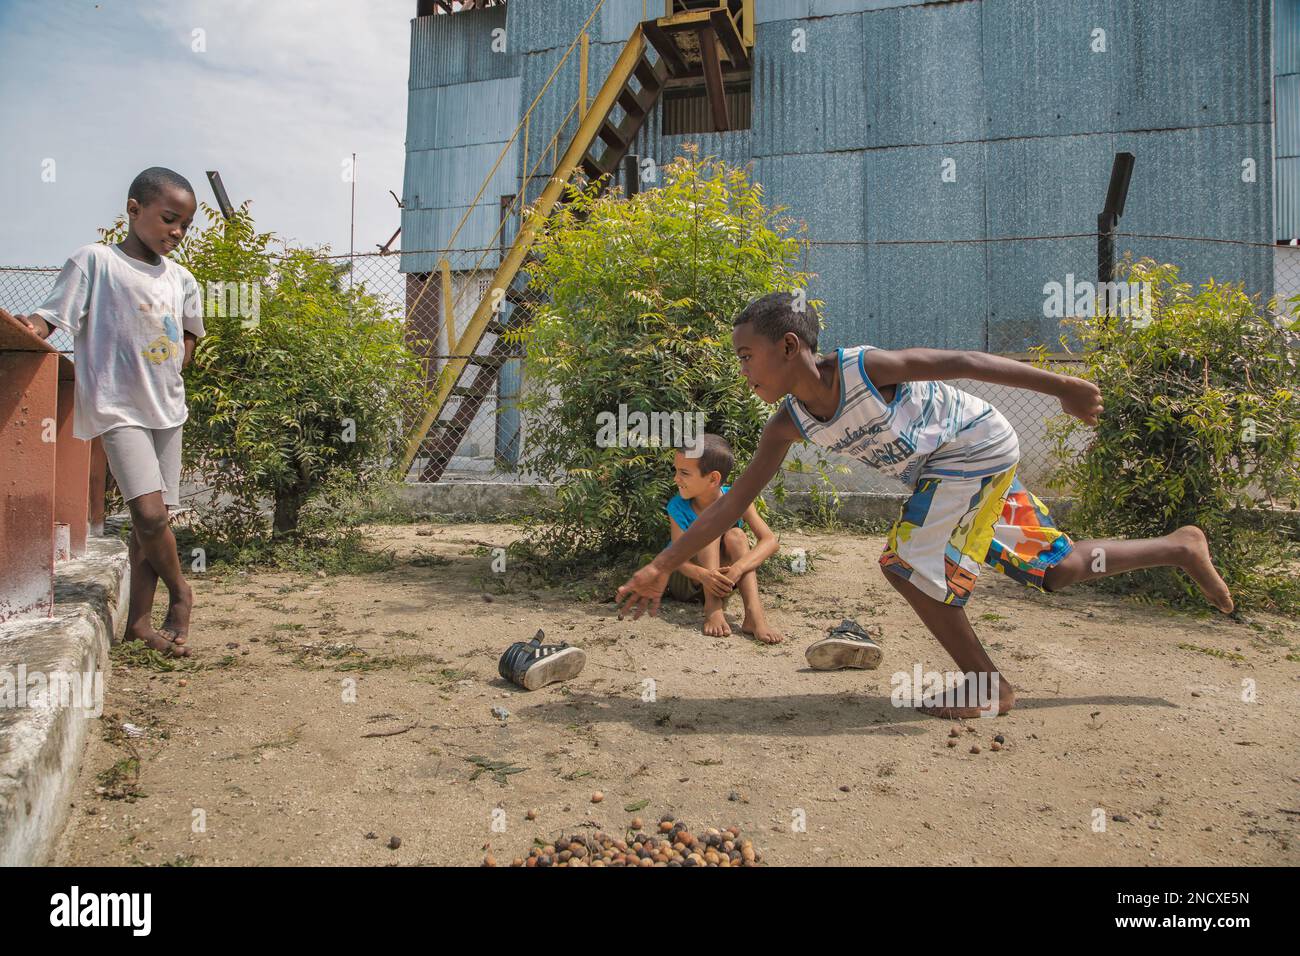 Augusto César Sandino, Artemisa, Cuba. 12 juillet 2019. Deux garçons noirs et un garçon blanc jouant des marbres pieds nus dans la terre avec des graines sèches, à Cuba. Banque D'Images